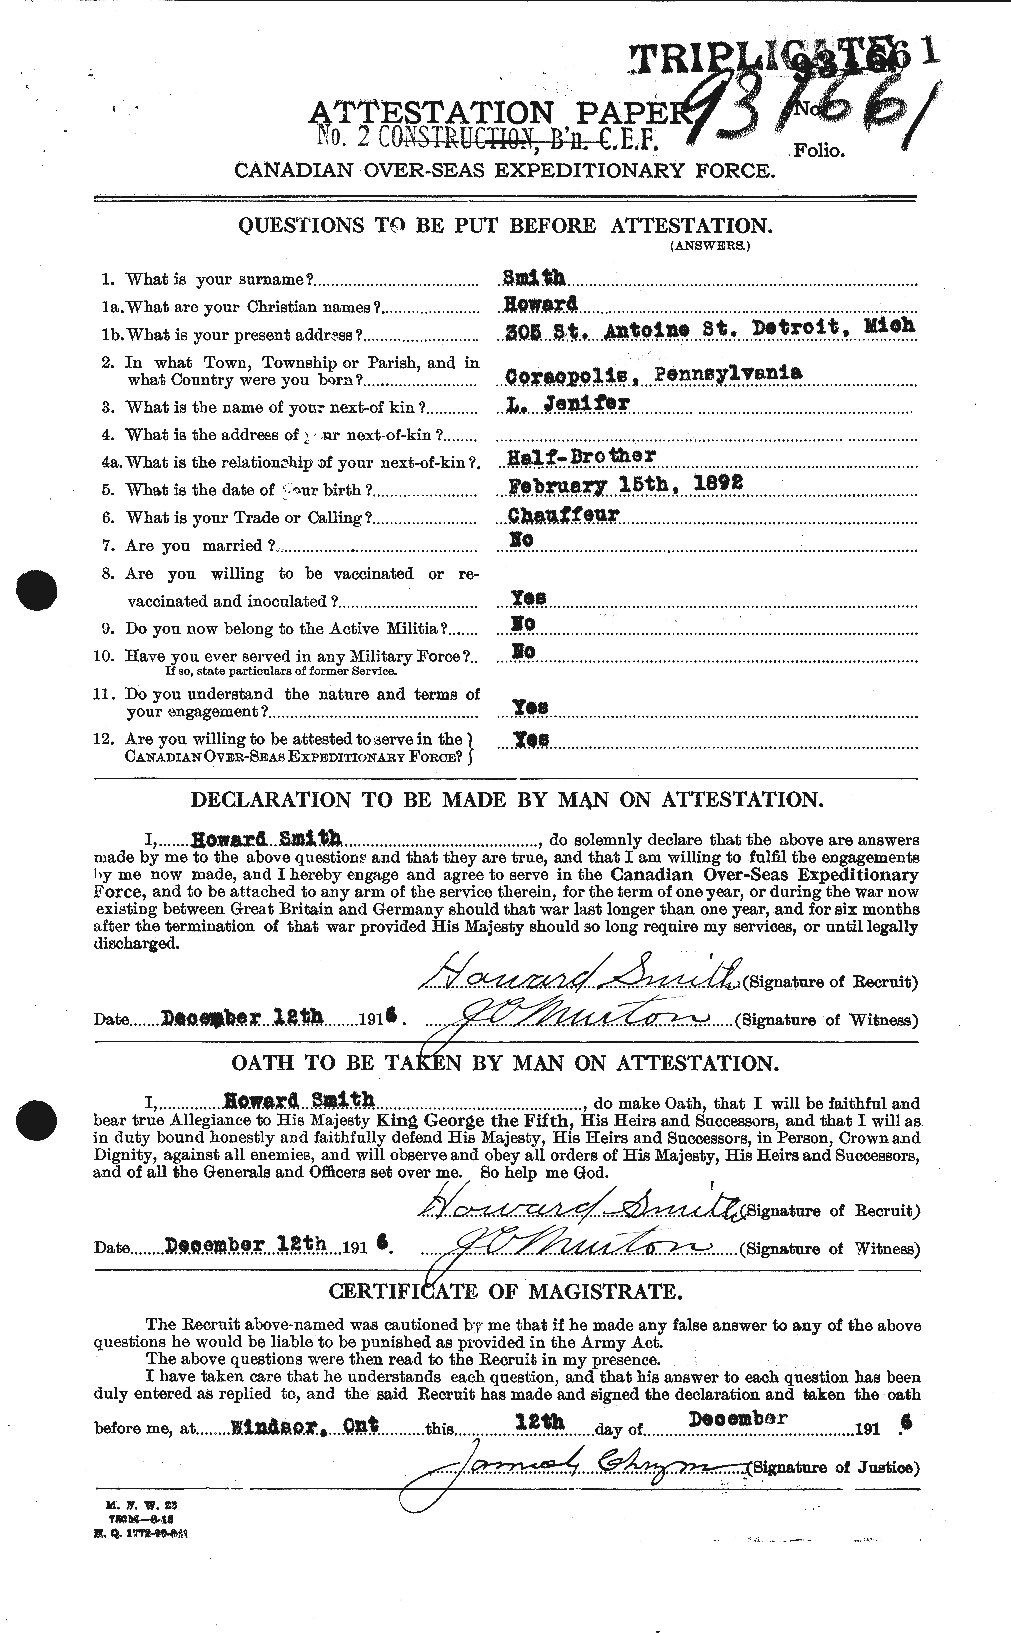 Dossiers du Personnel de la Première Guerre mondiale - CEC 104571a